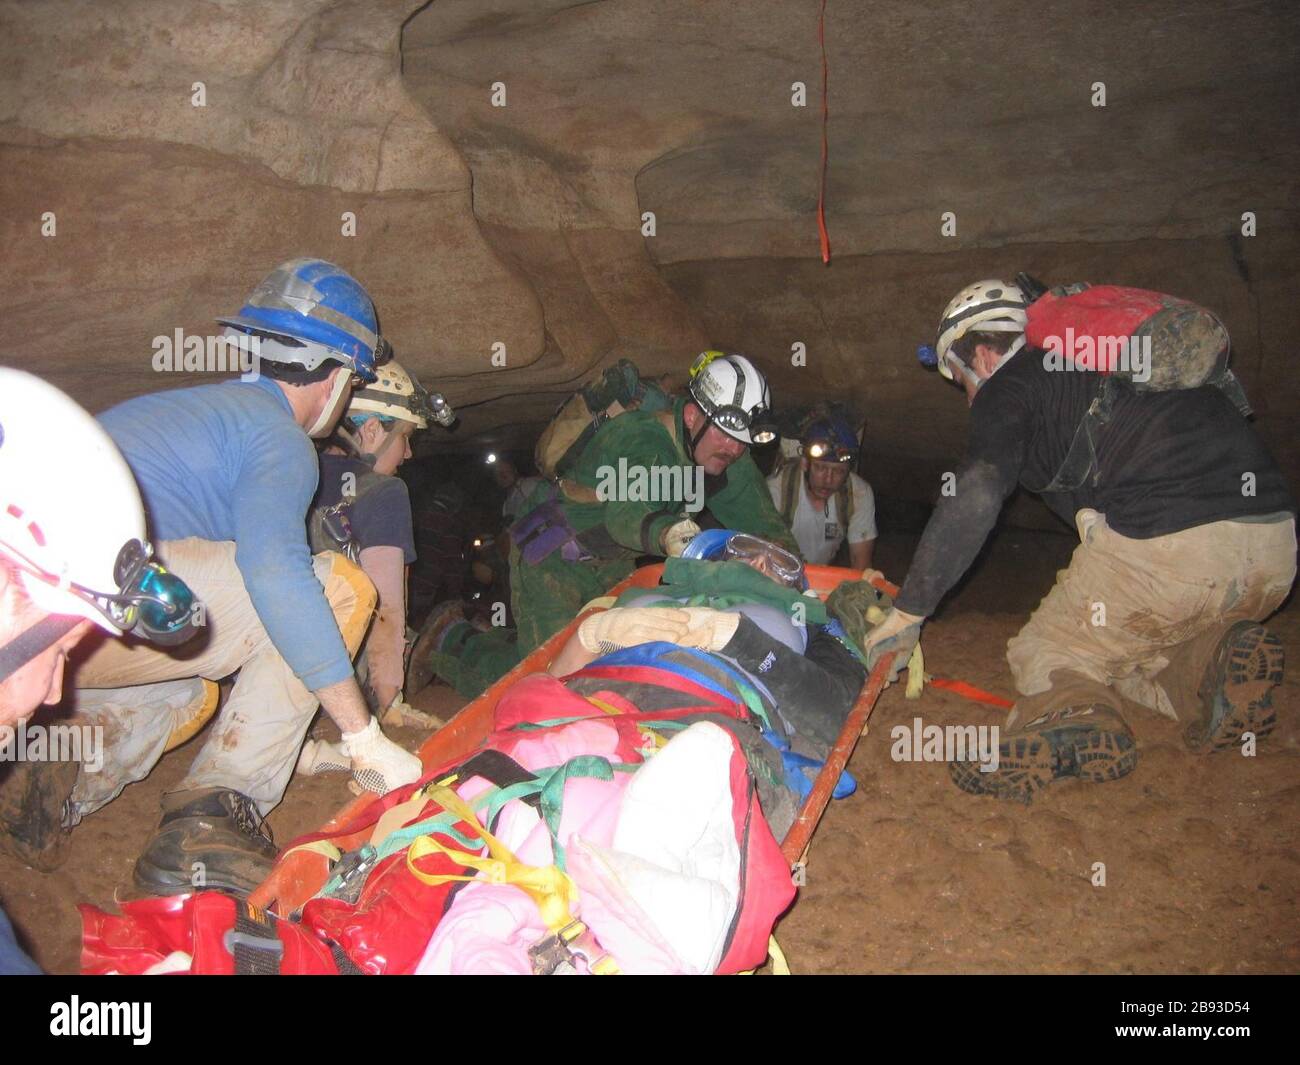 "Chattanooga/Hamilton County Cueva transportar un equipo de rescate de heridos caver.; 13 de agosto de 2007 (fecha de carga original); trasladado desde en.wikipedia a Commons.; Tagcaver2 en Wikipedia en inglés; ' Foto de stock